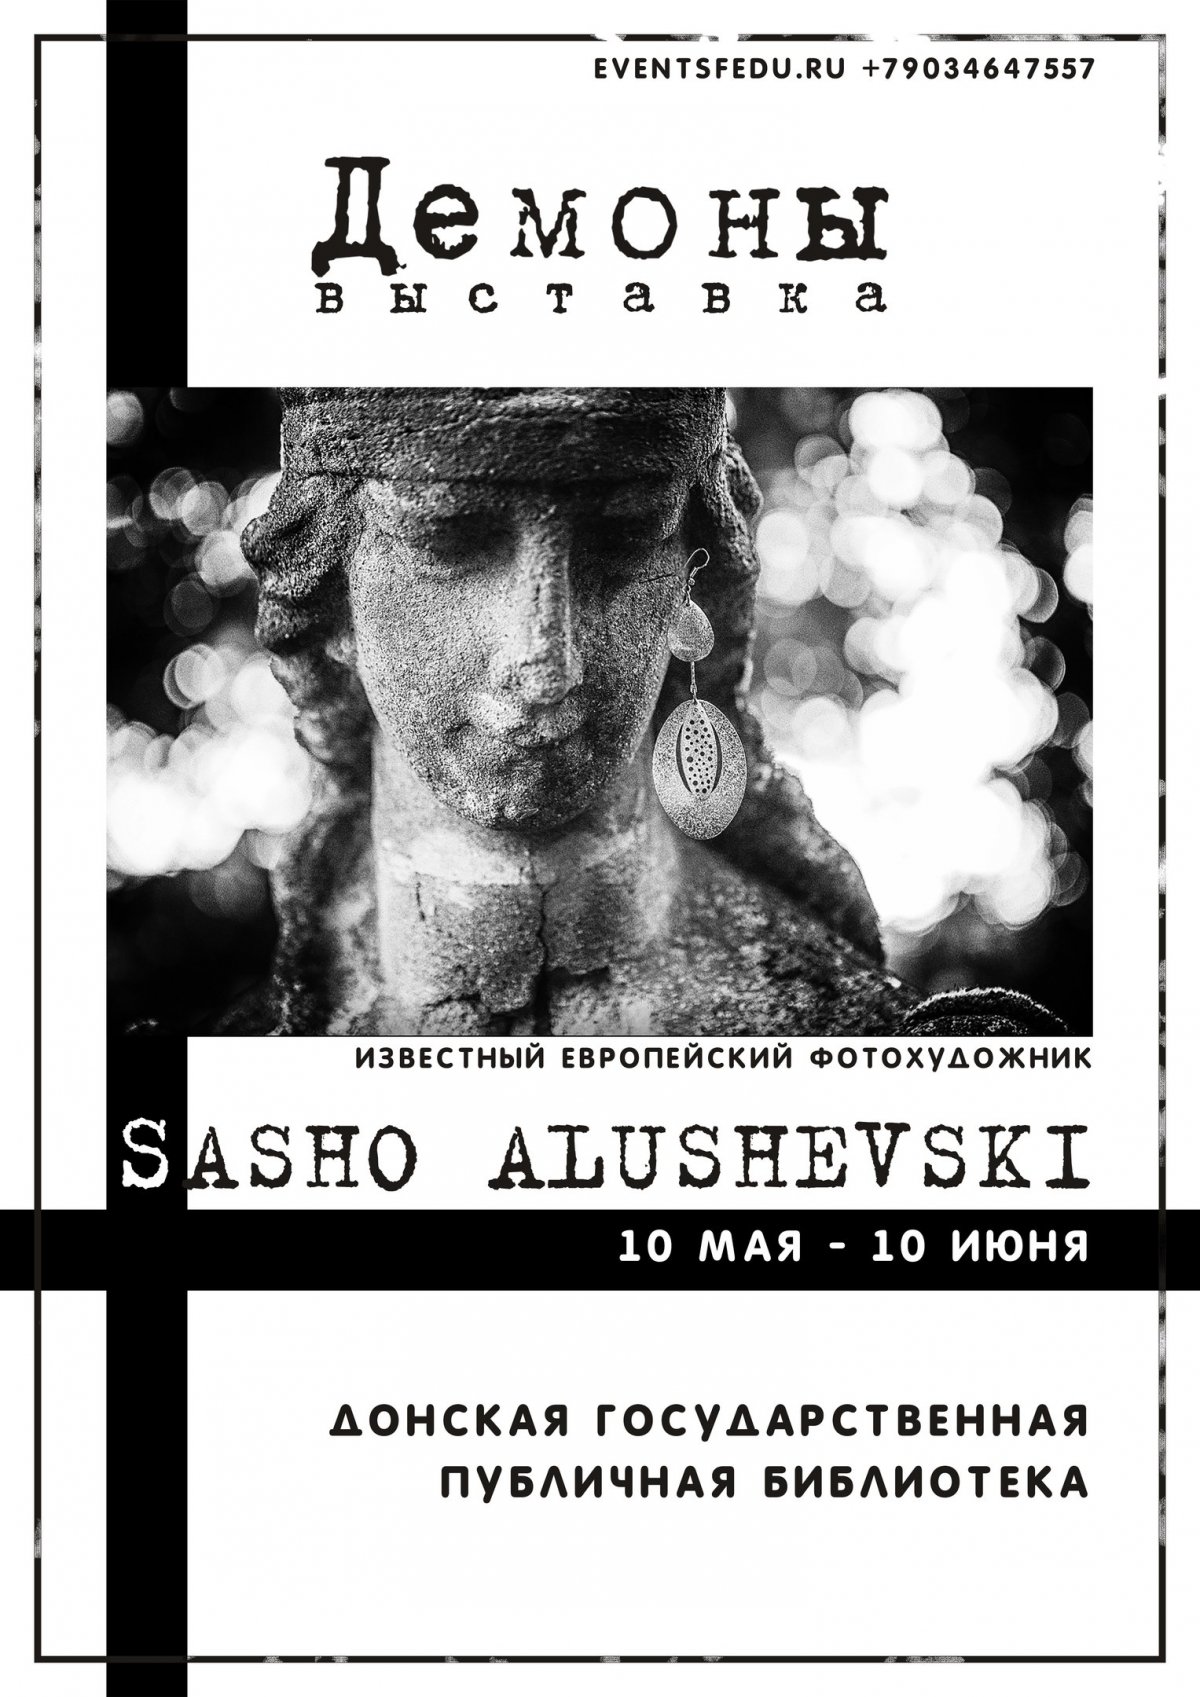 В Донской государственной публичной библиотеке 10 мая откроется выставка фоторабот македонского фотохудожника Сашо Алушевски "Демоны".